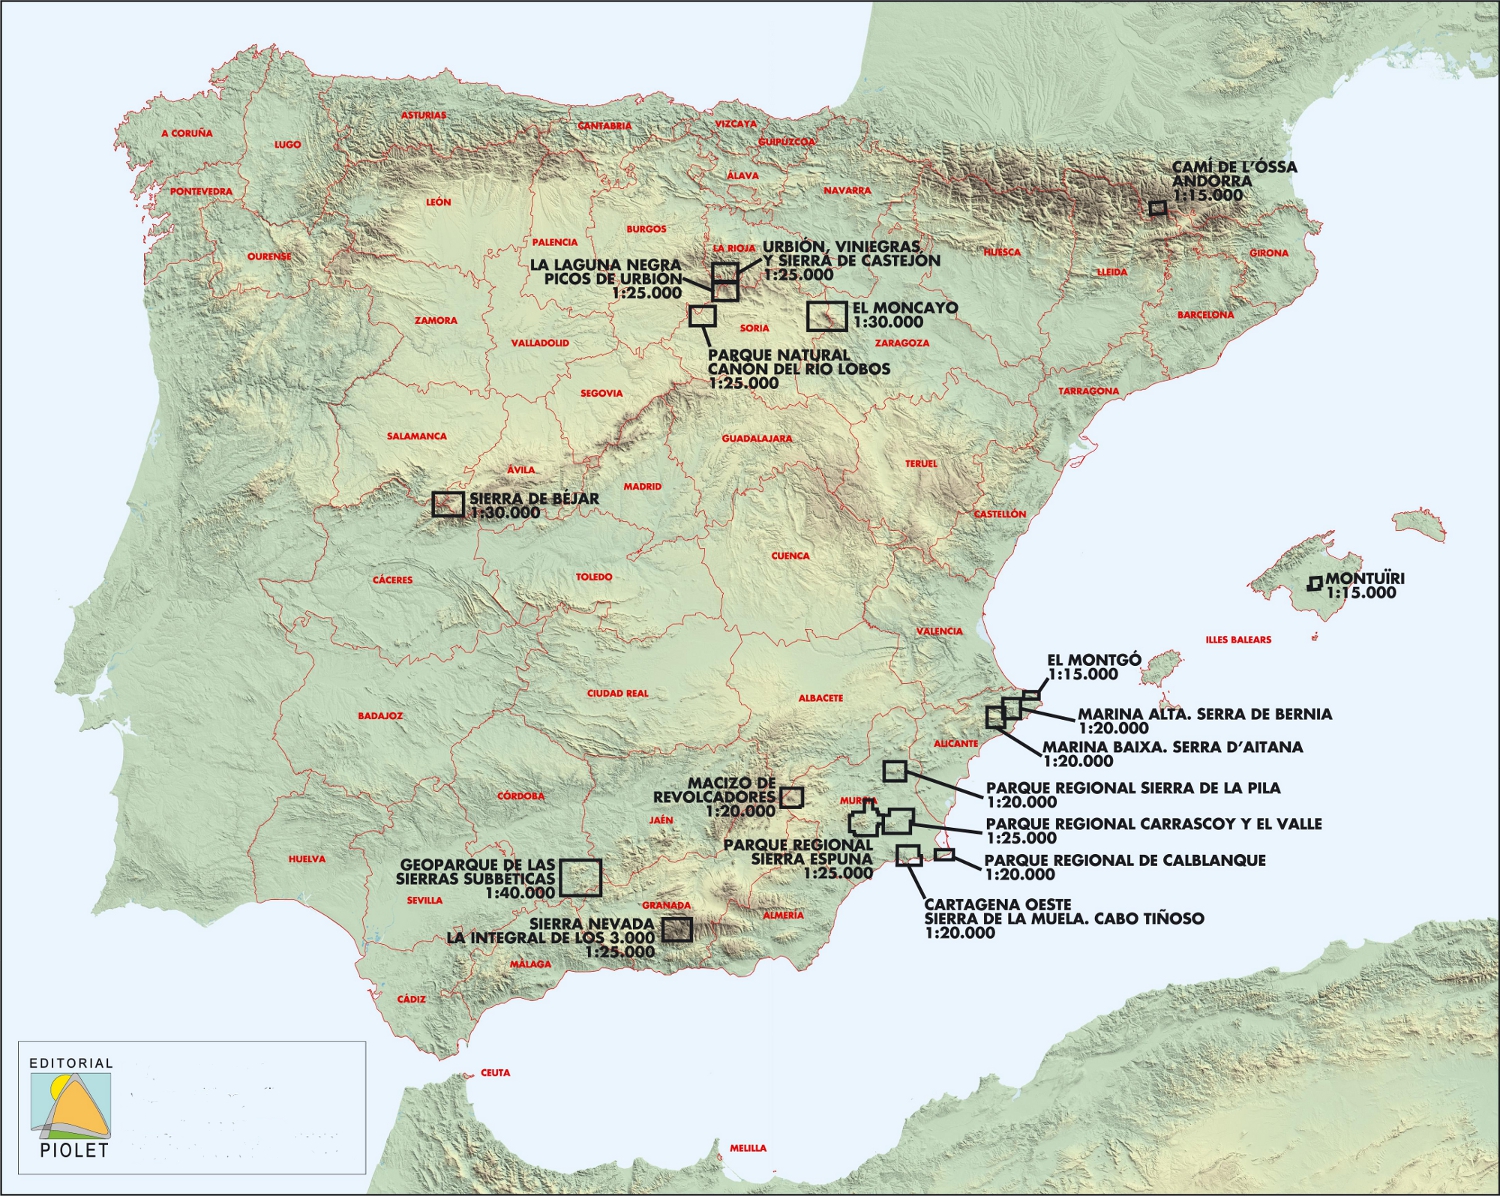 Overzichtskaart wandelkaarten Editorial Piolet - Spanje zuidoost